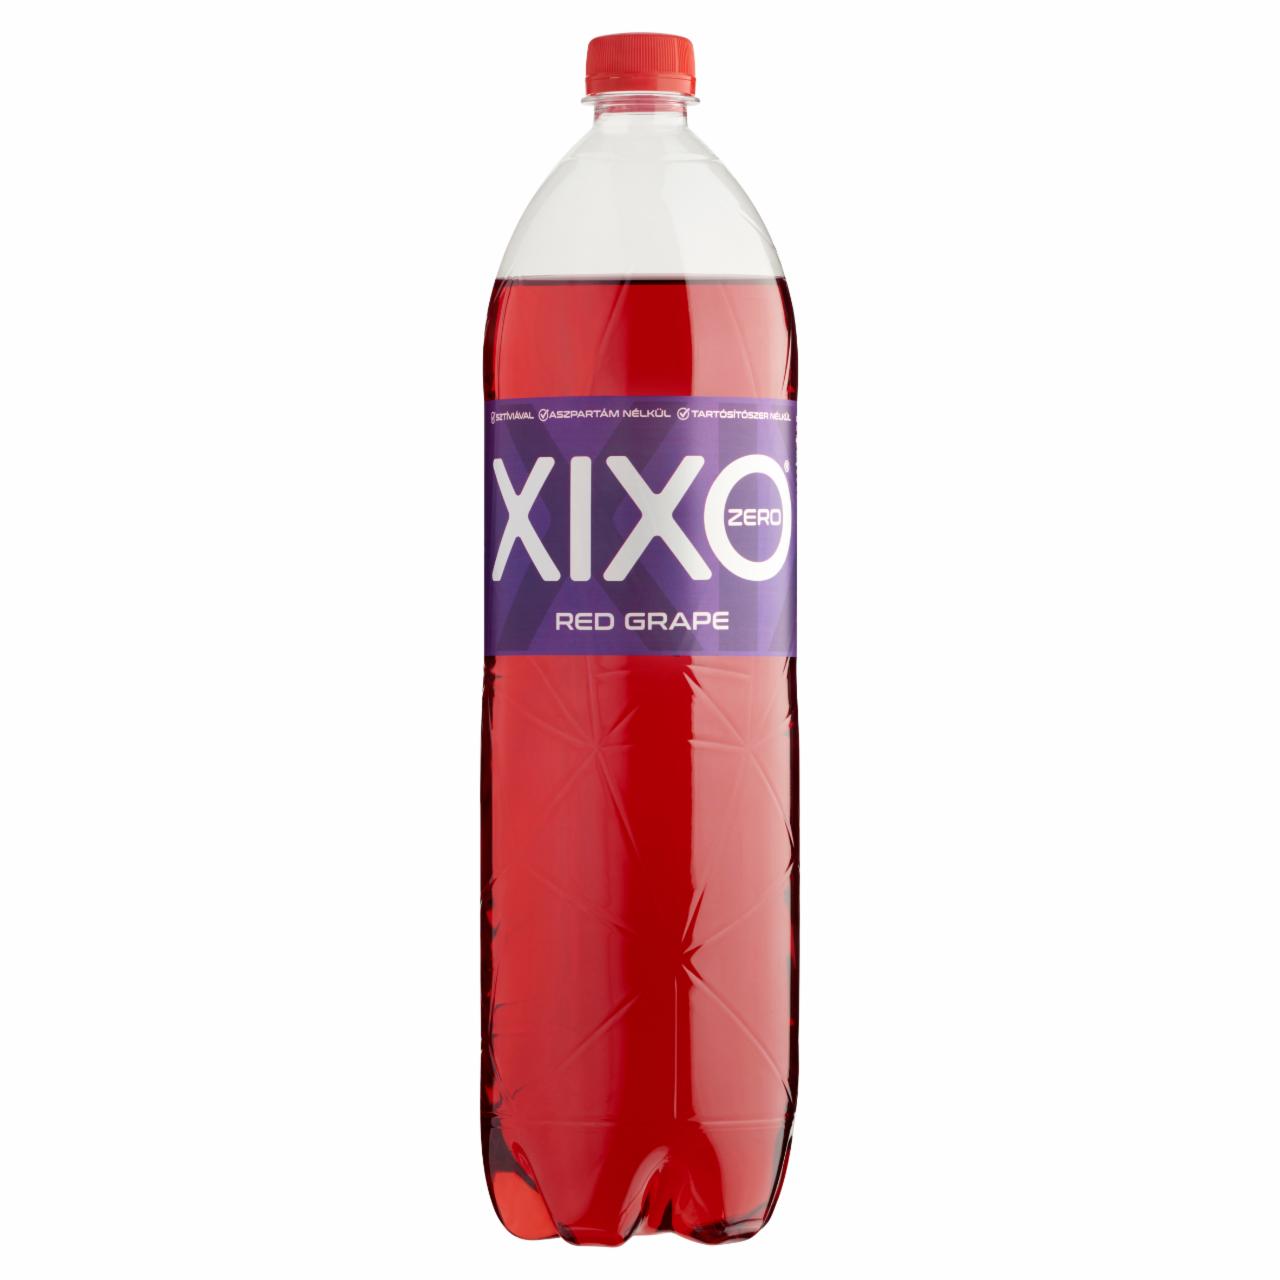 Képek - XIXO Red Grape Zero piros szőlő ízű energia-, cukormentes szénsavas üdítőital édesítőszerekkel 1,5 l